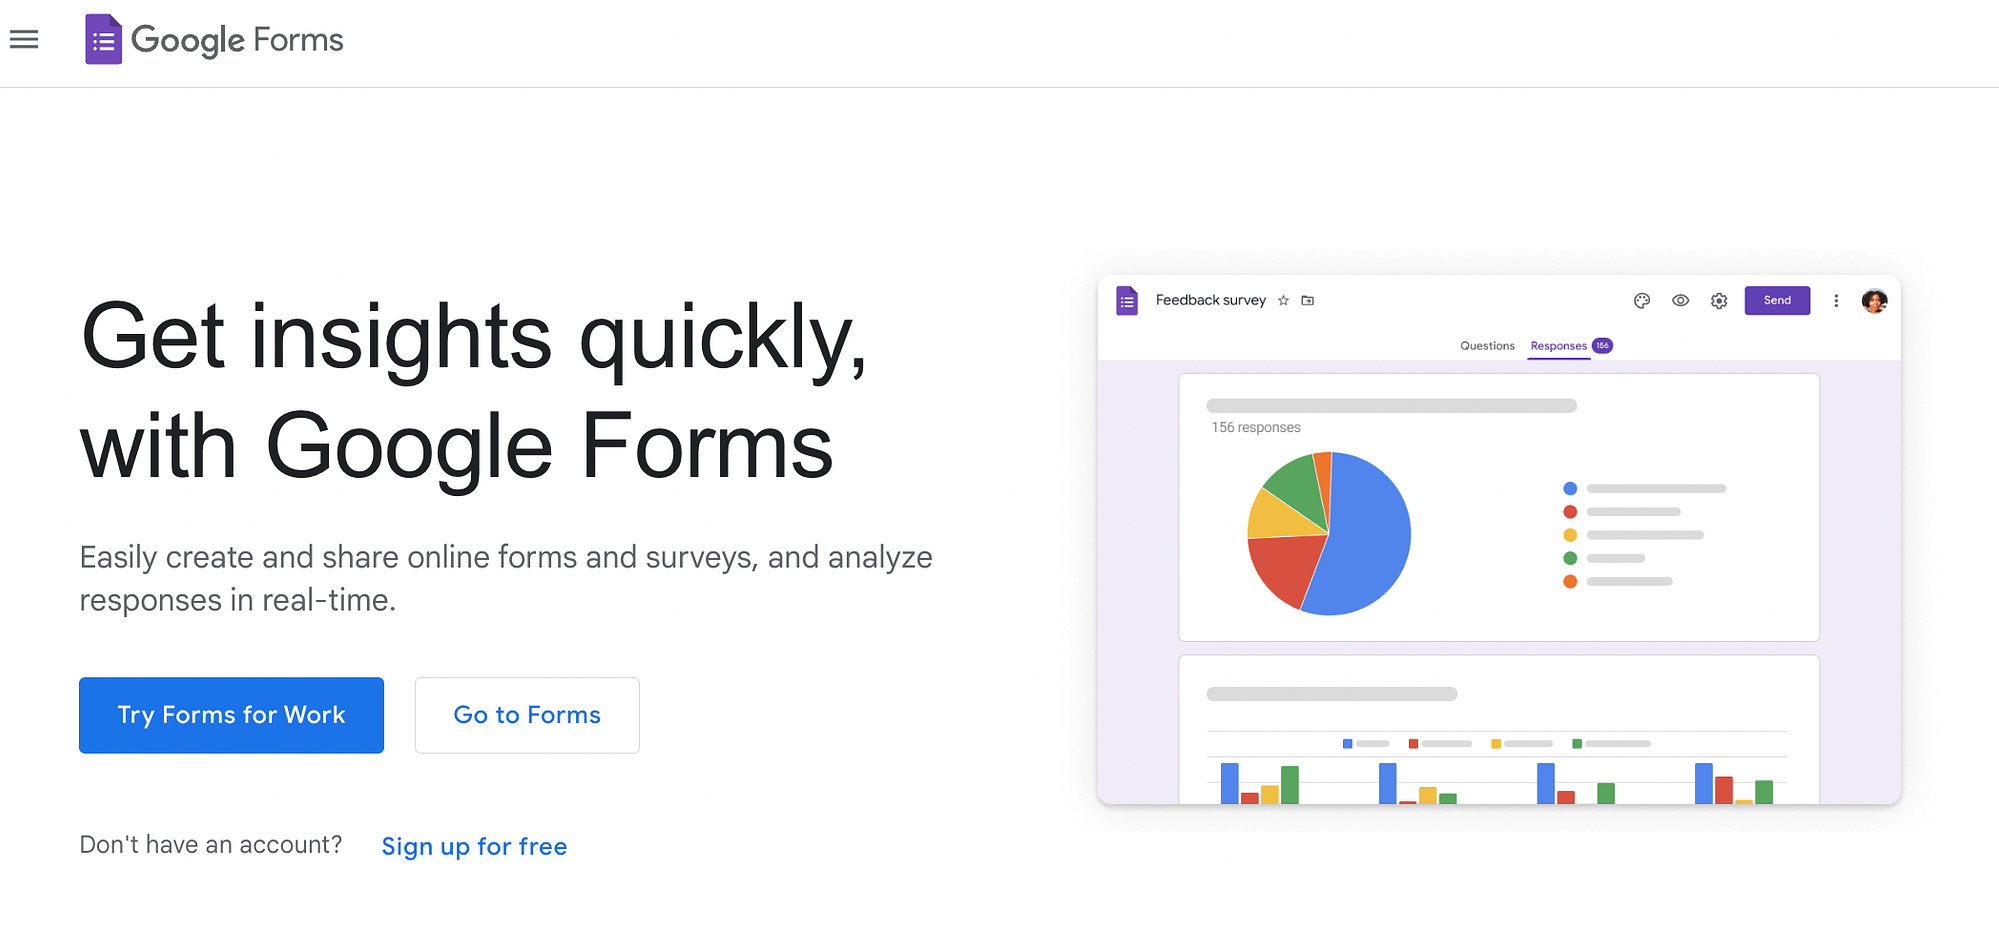 如果您正在寻找免费的用户体验研究工具，那么 Google Forms 是一个很好的选择。